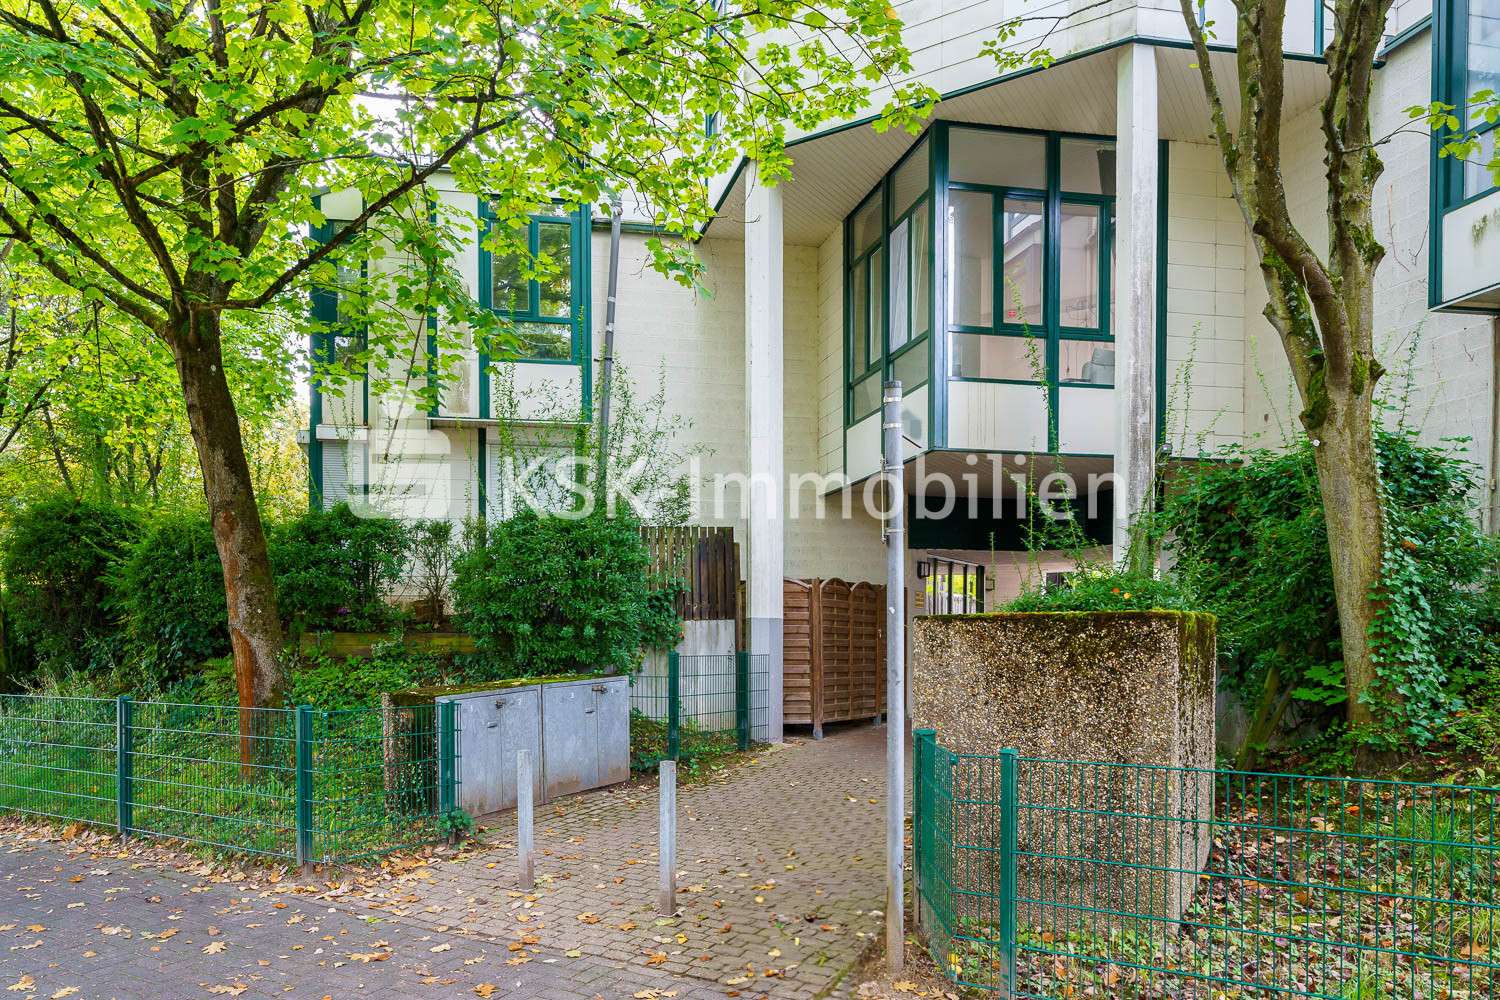 124653 Außenansicht - Loft / Studio / Atelier in 53125 Bonn mit 52m² kaufen